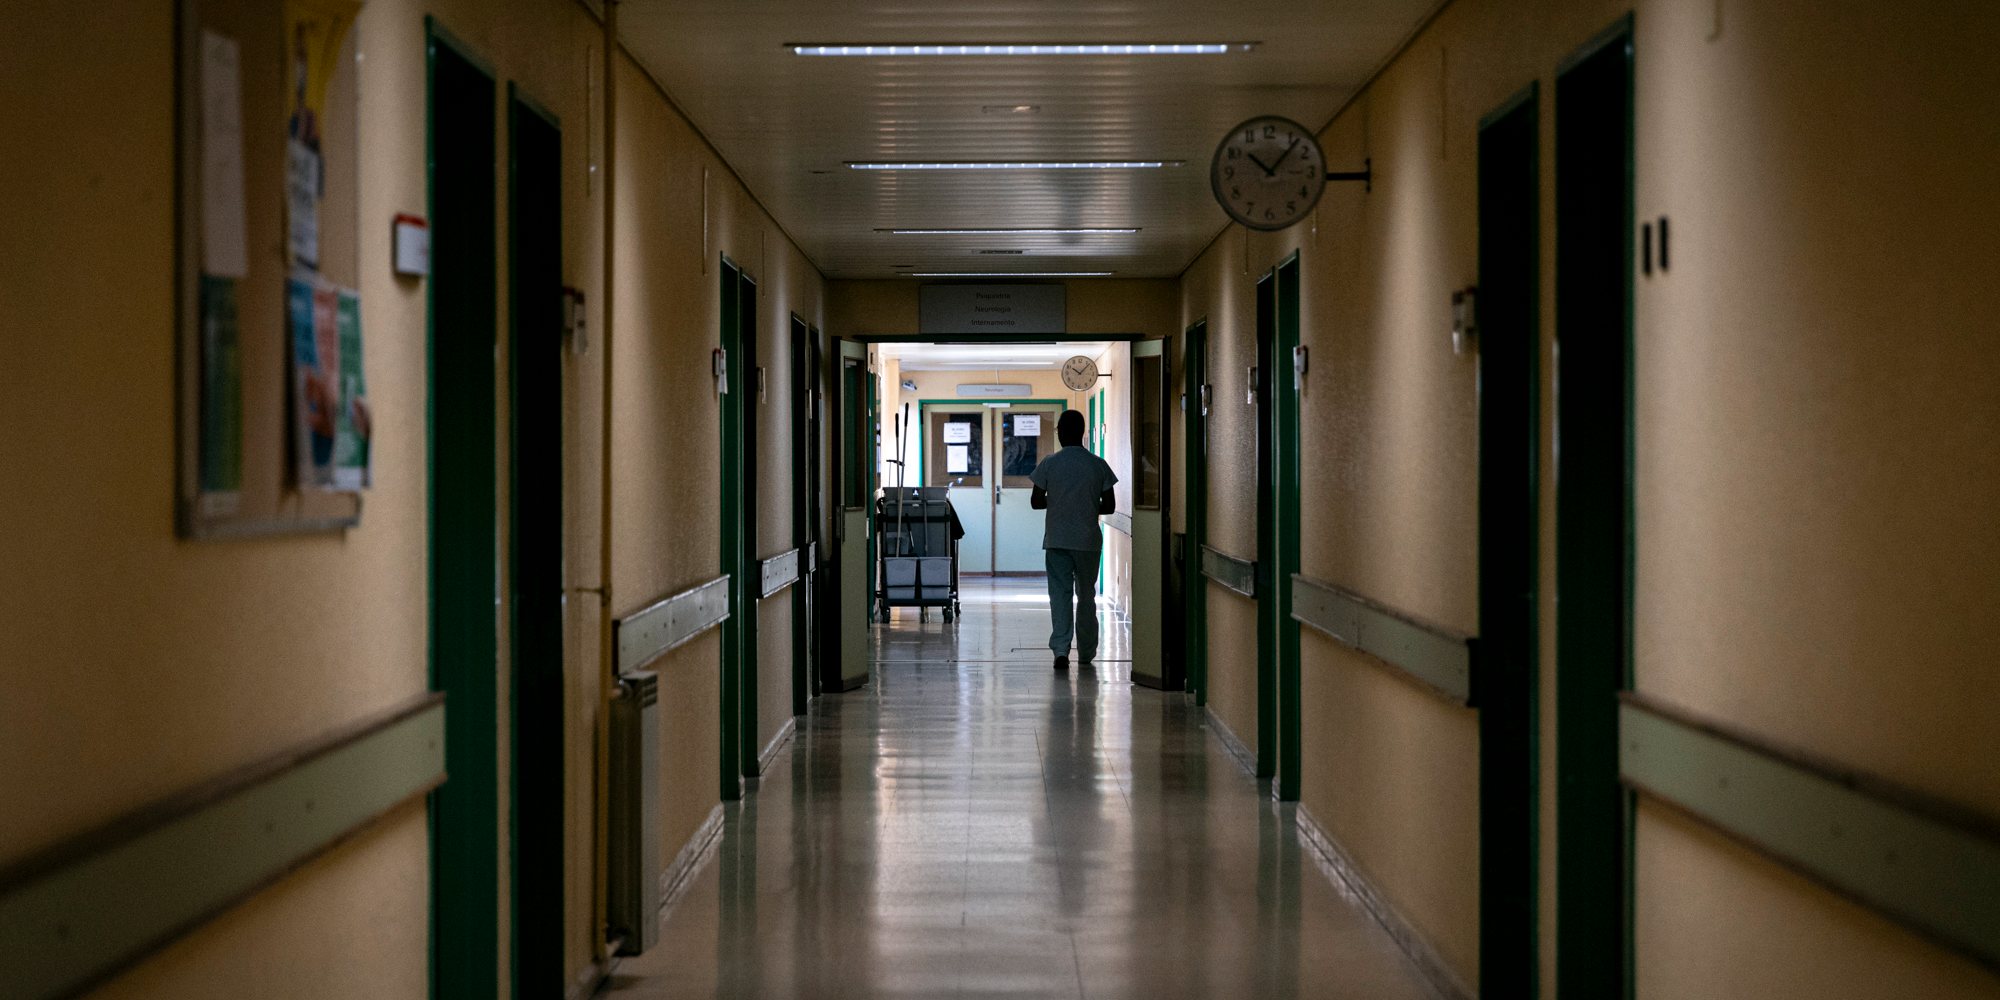 Mais de metade dos internos estão em risco de desenvolver burnout, segundo um estudo da Ordem dos Médicos